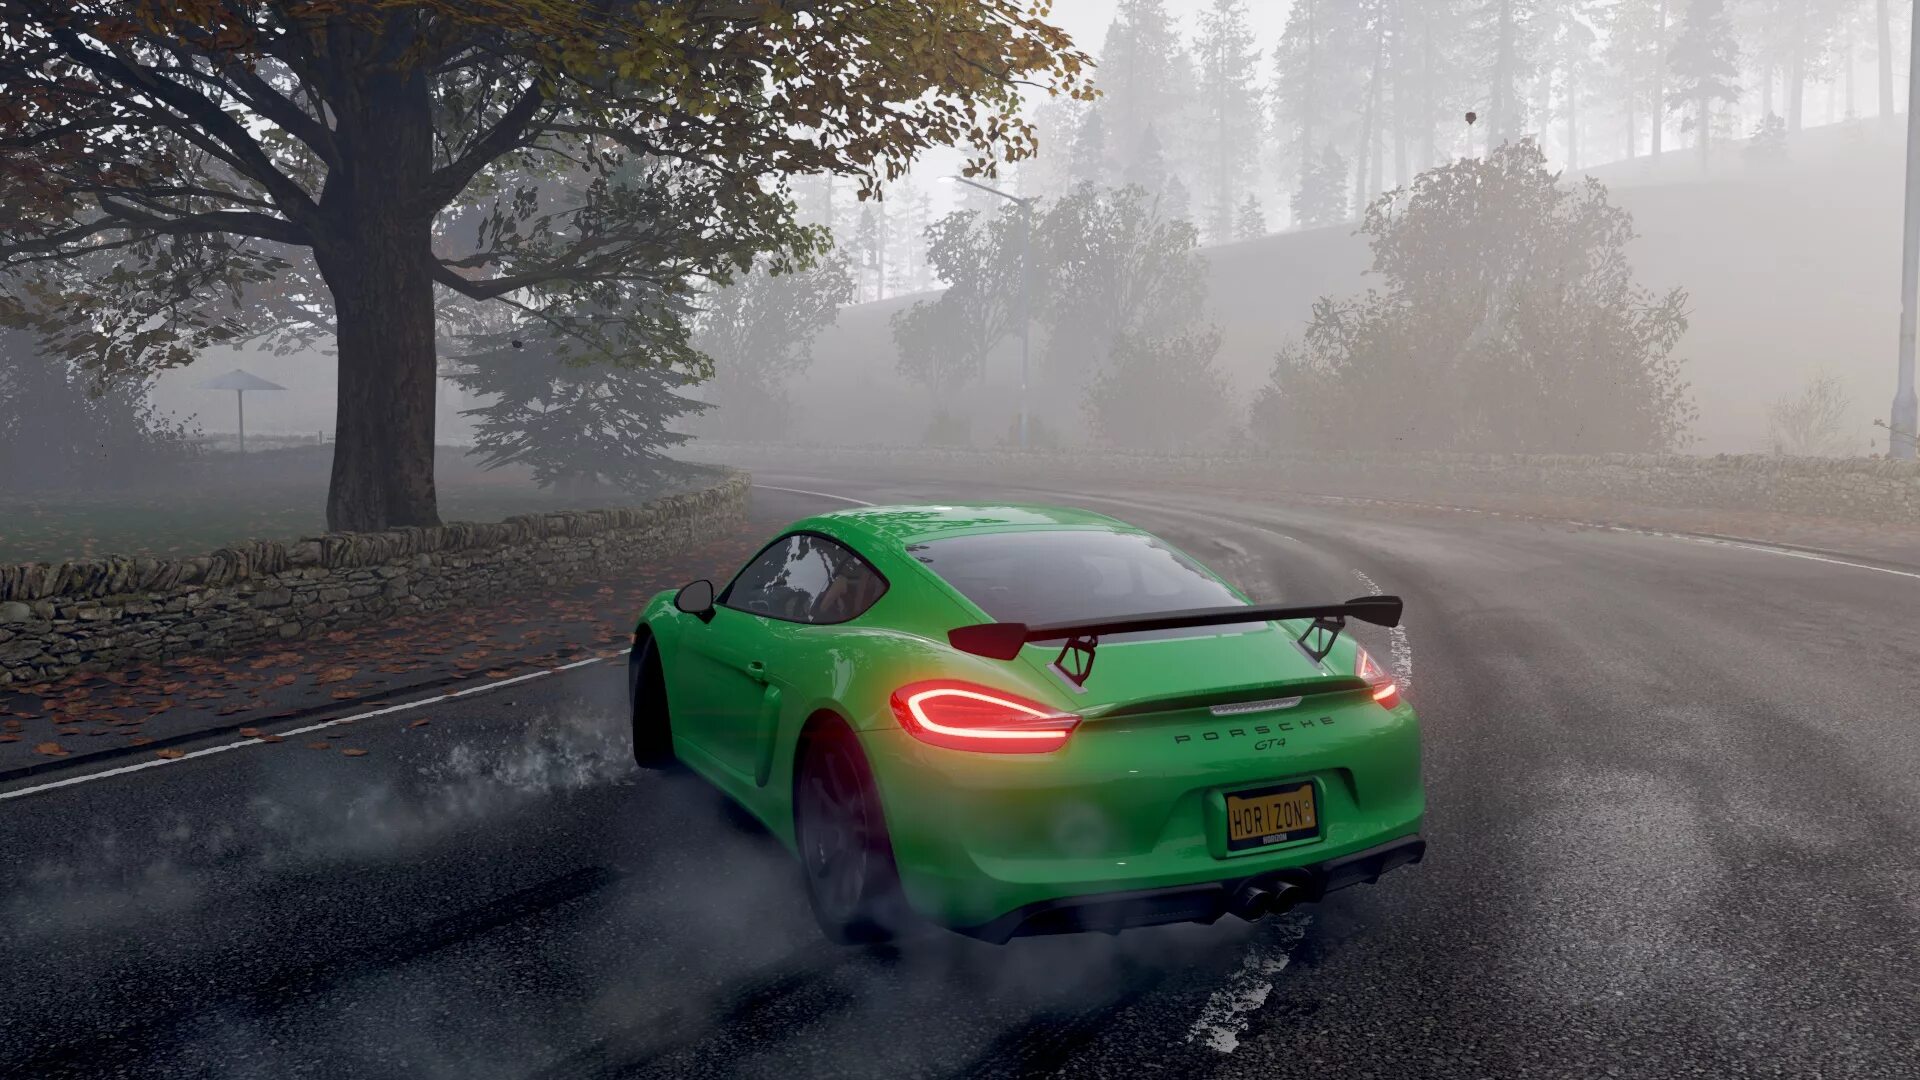 Game forza horizon 4. Forza Horizon 4 Porsche Cayman. Forza Horizon 4 Drift. Forza Horizon 4 Ultimate Edition. Forza Horizon 4 Porsche.